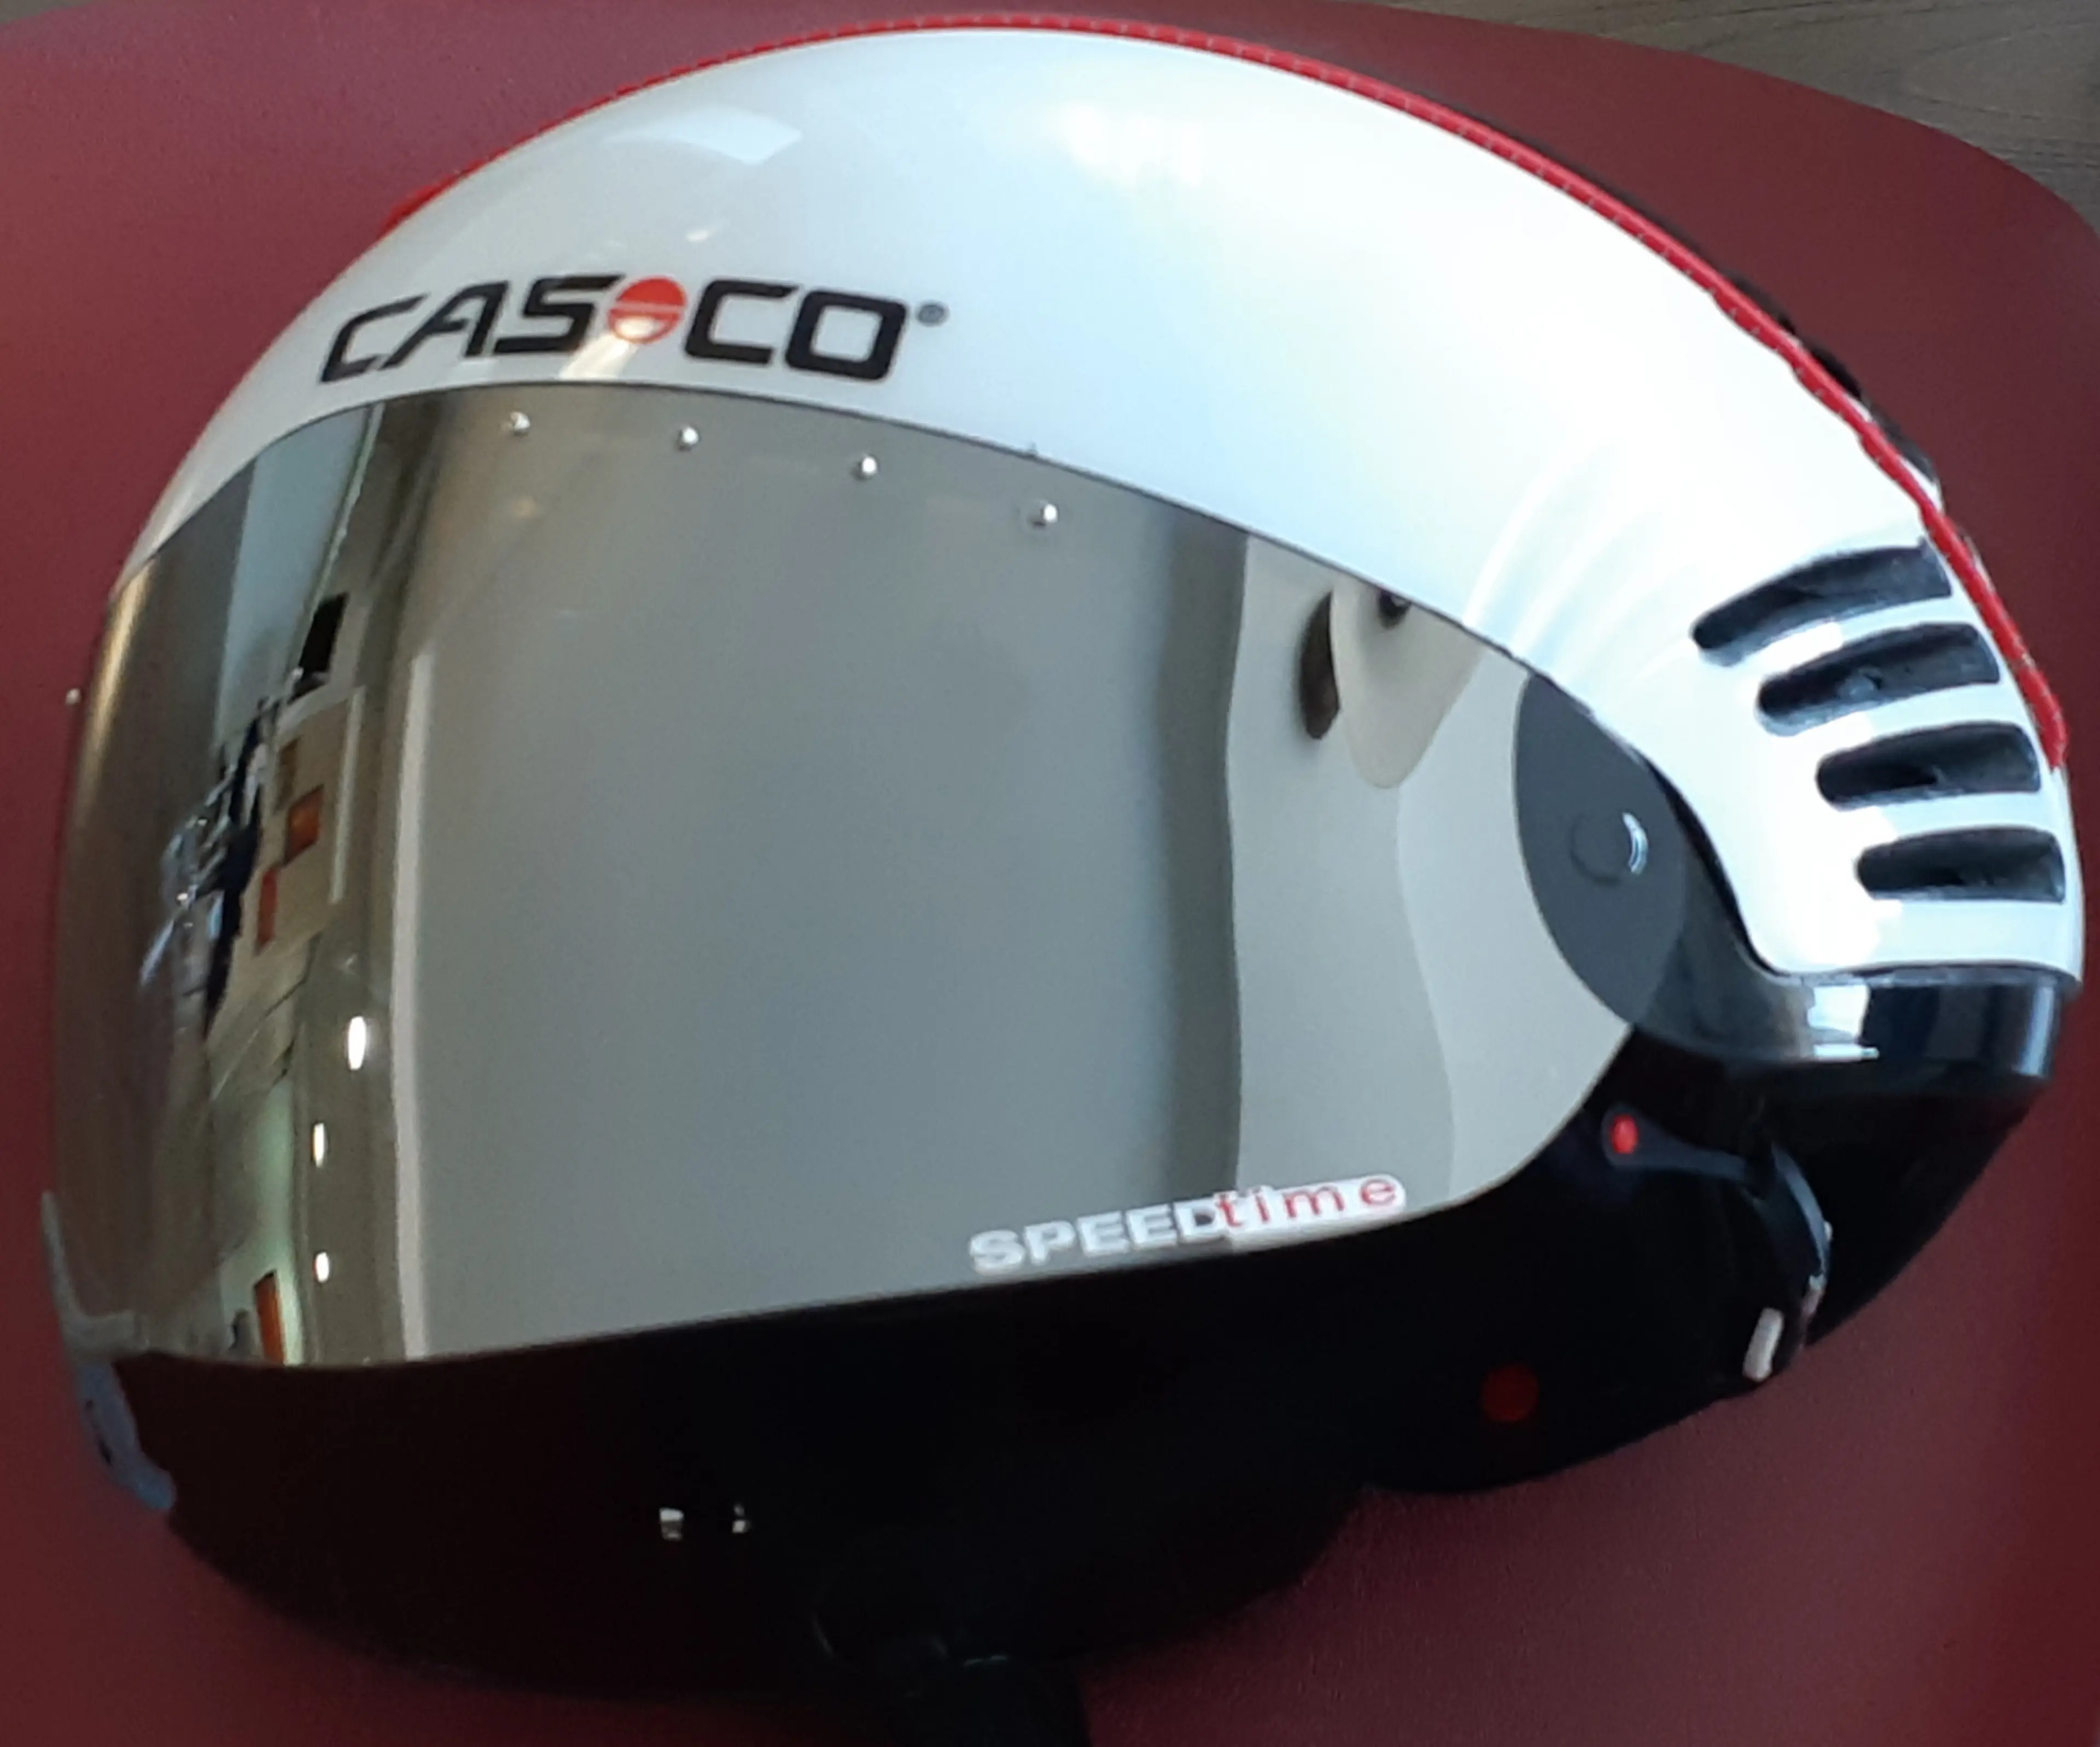 1. Casca time trial Casco Speedtime